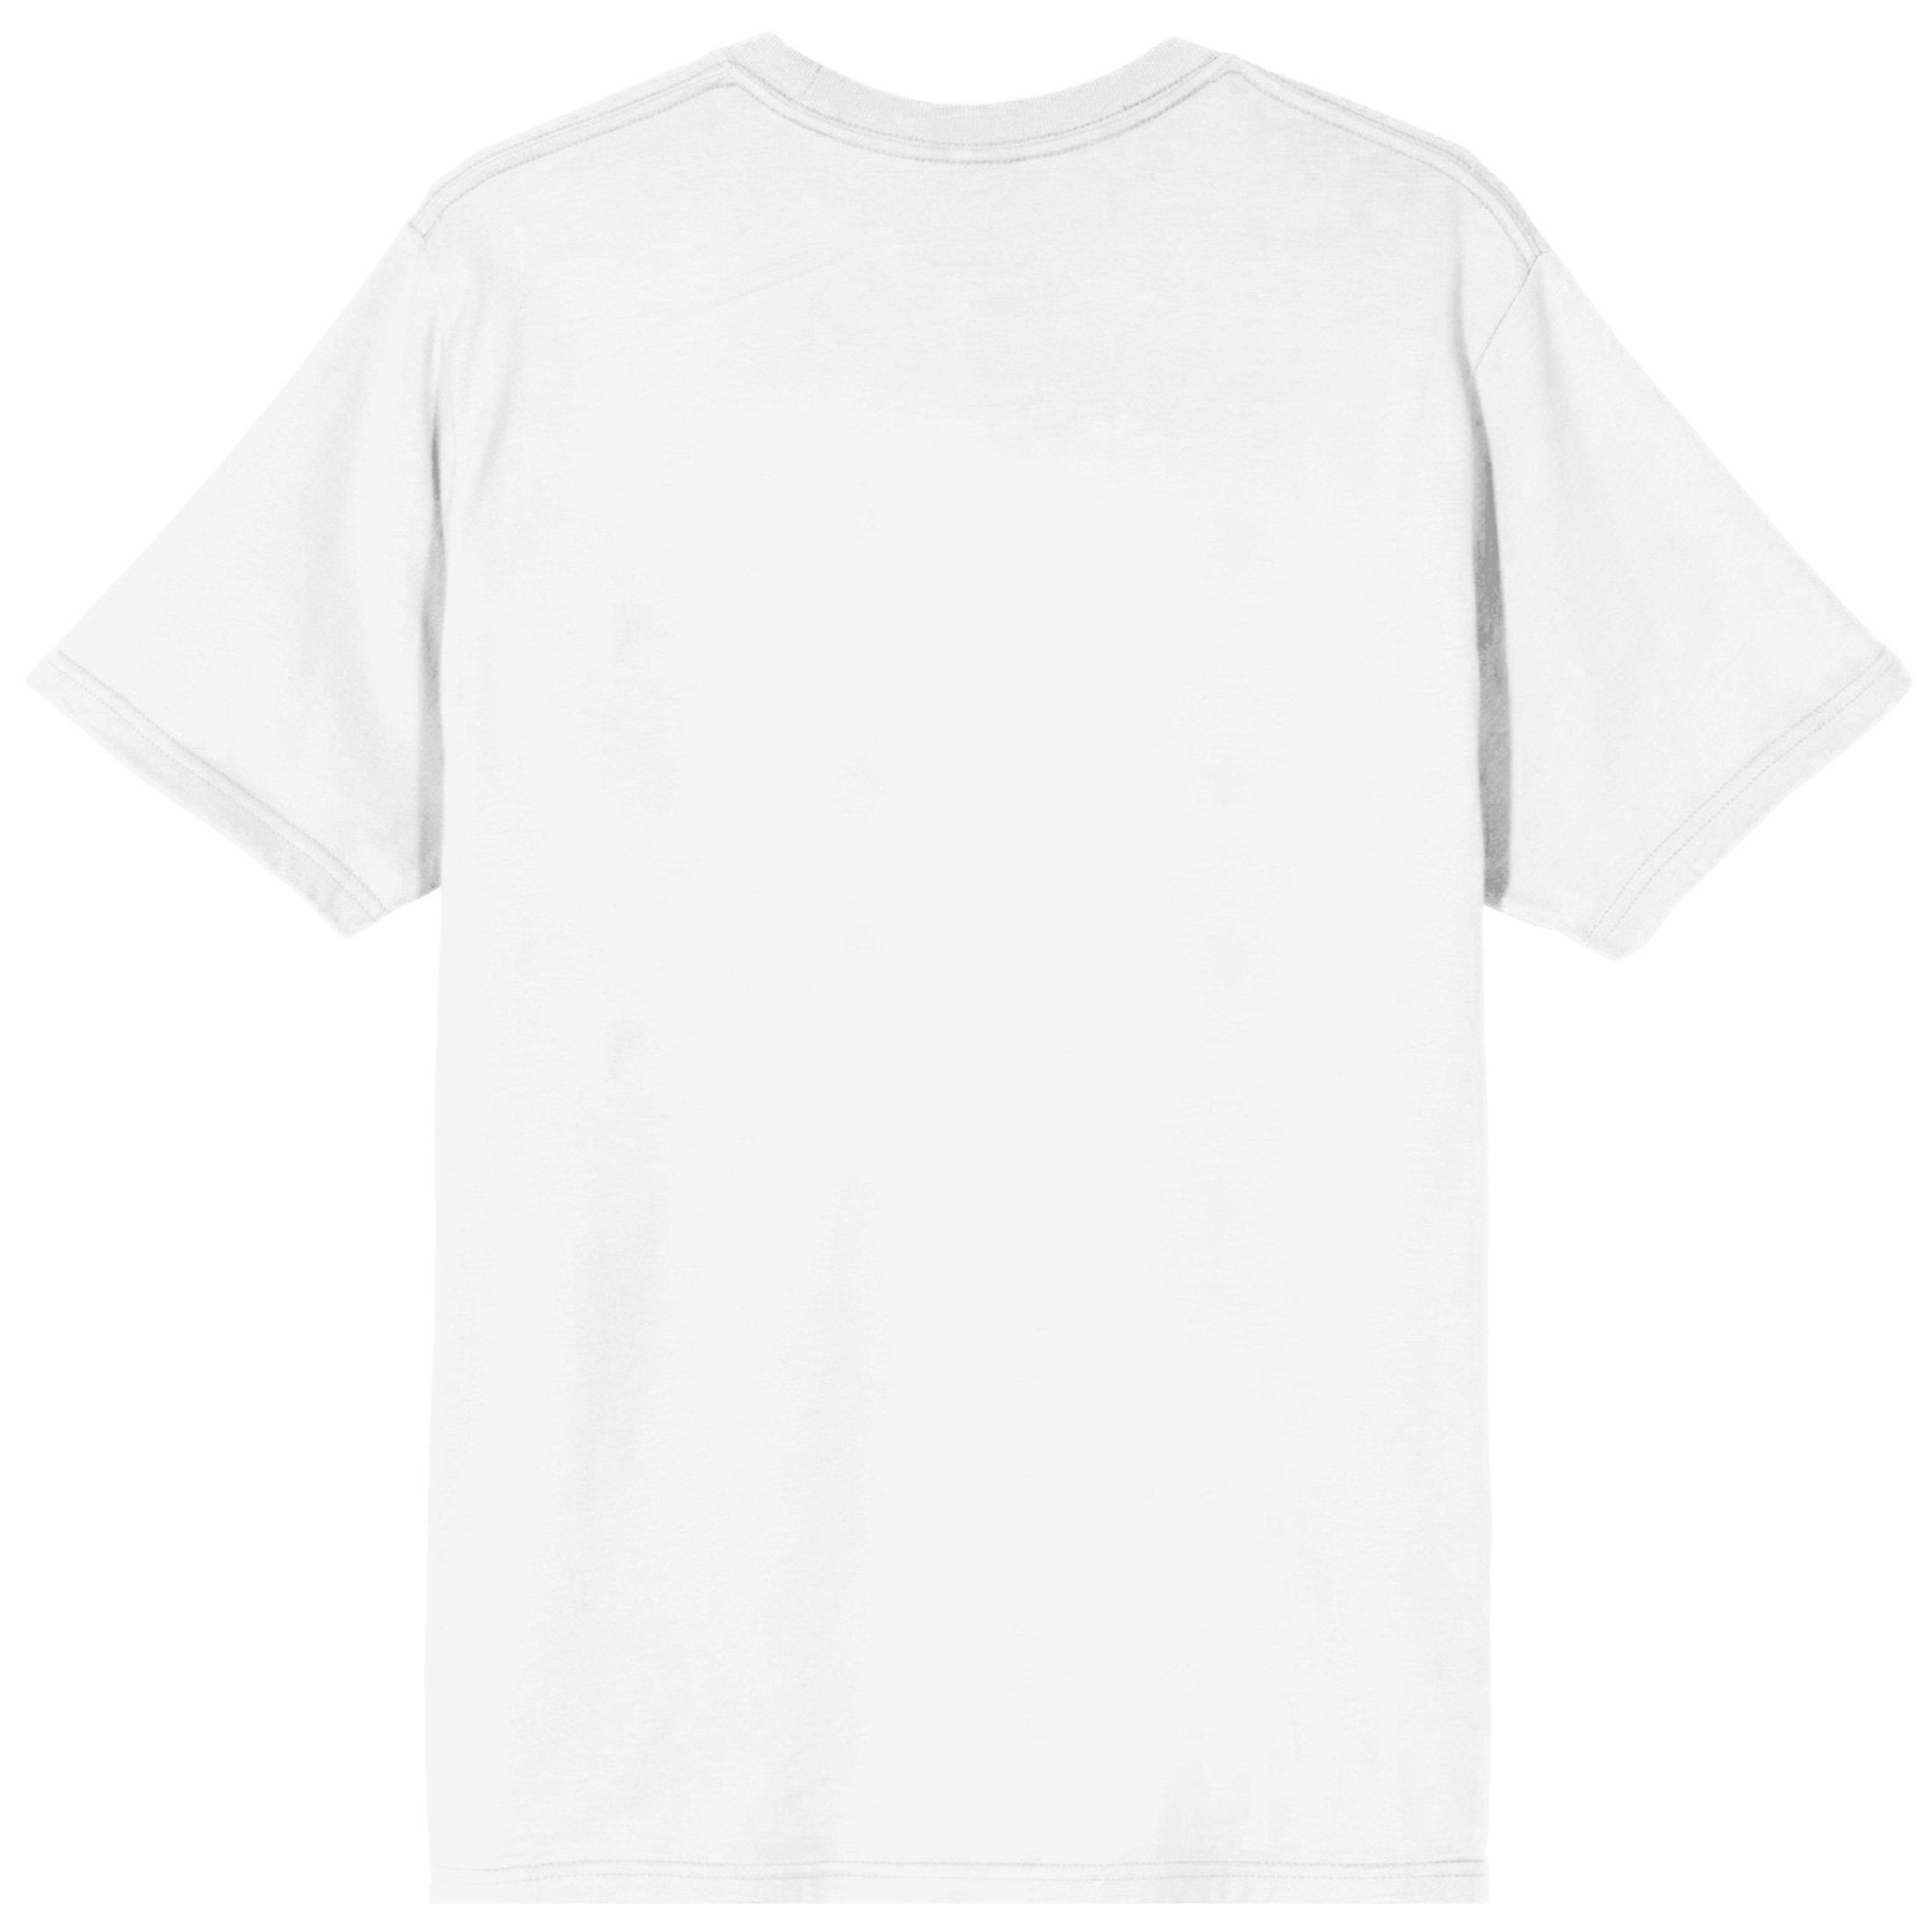 Dragon Ball Z Anime Men's White Short Sleeve T-Shirt